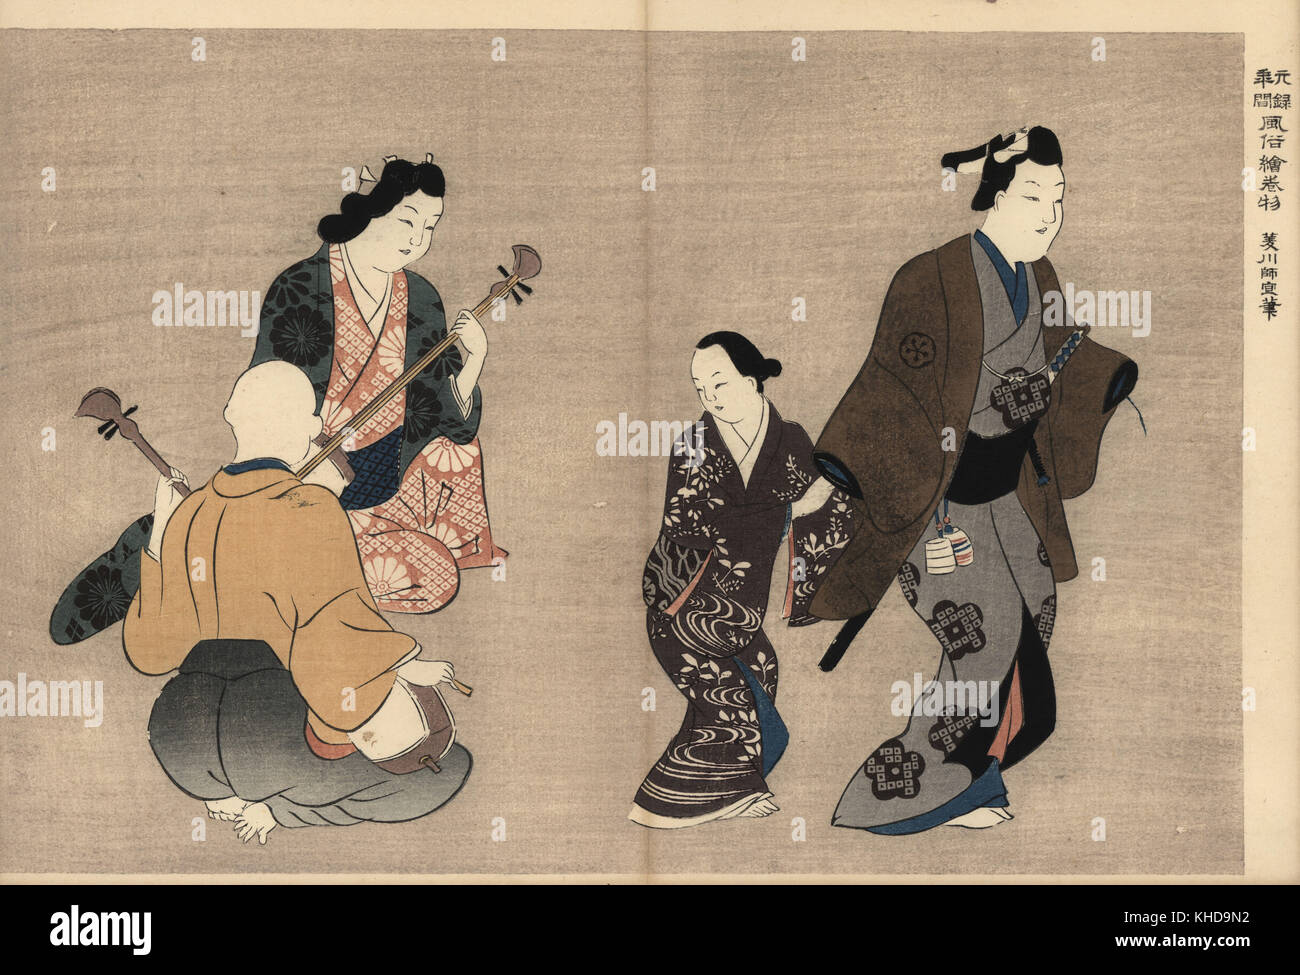 Client avec Samurai kamuro en passant devant deux joueurs de shamisen dans les quartiers de plaisir. Moronobu Hishikawa par gravure sur bois (1618-1694) de Fuzoku Emakimono, rouleau de la commerce de l'eau Tokyo, réimpression vers 1880. Banque D'Images